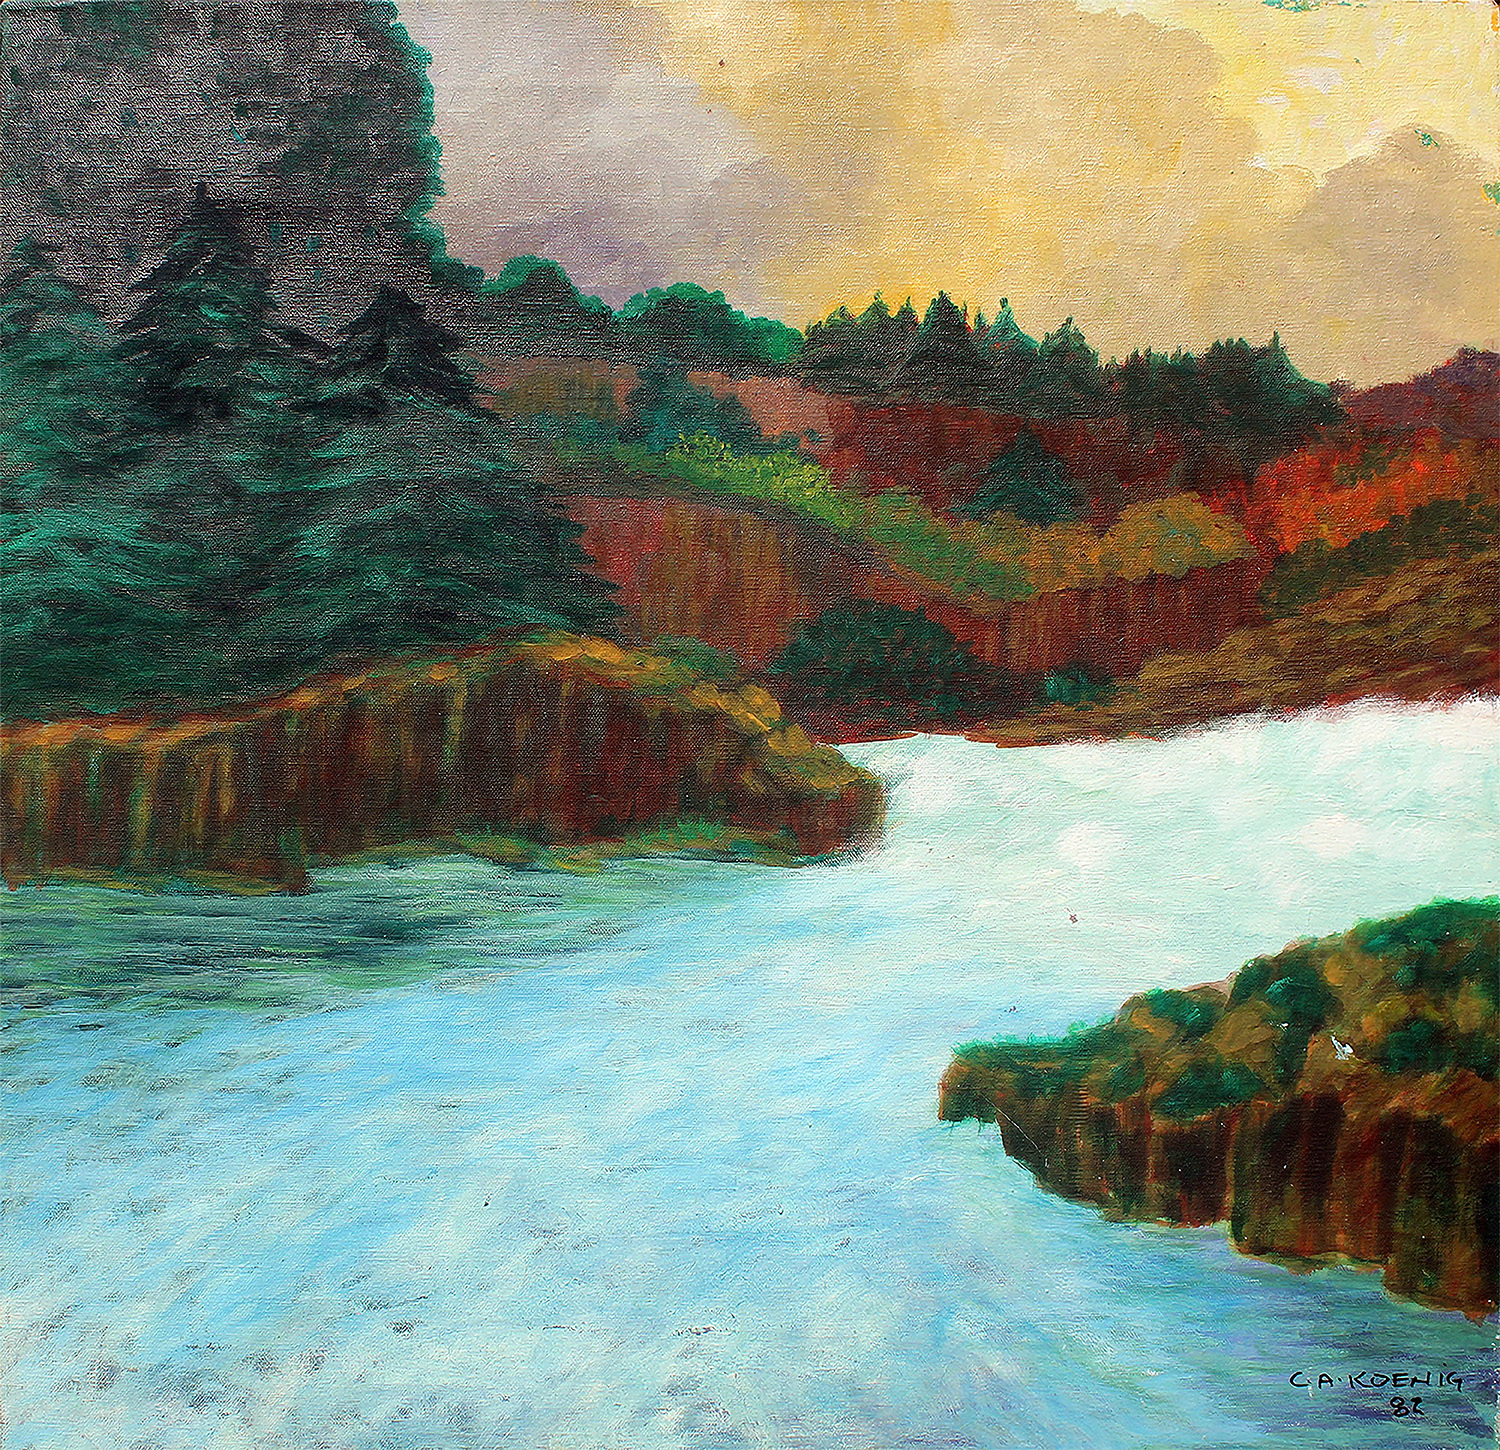 "A River Runs Through It" Acrylic on canvas by Carl Koenig